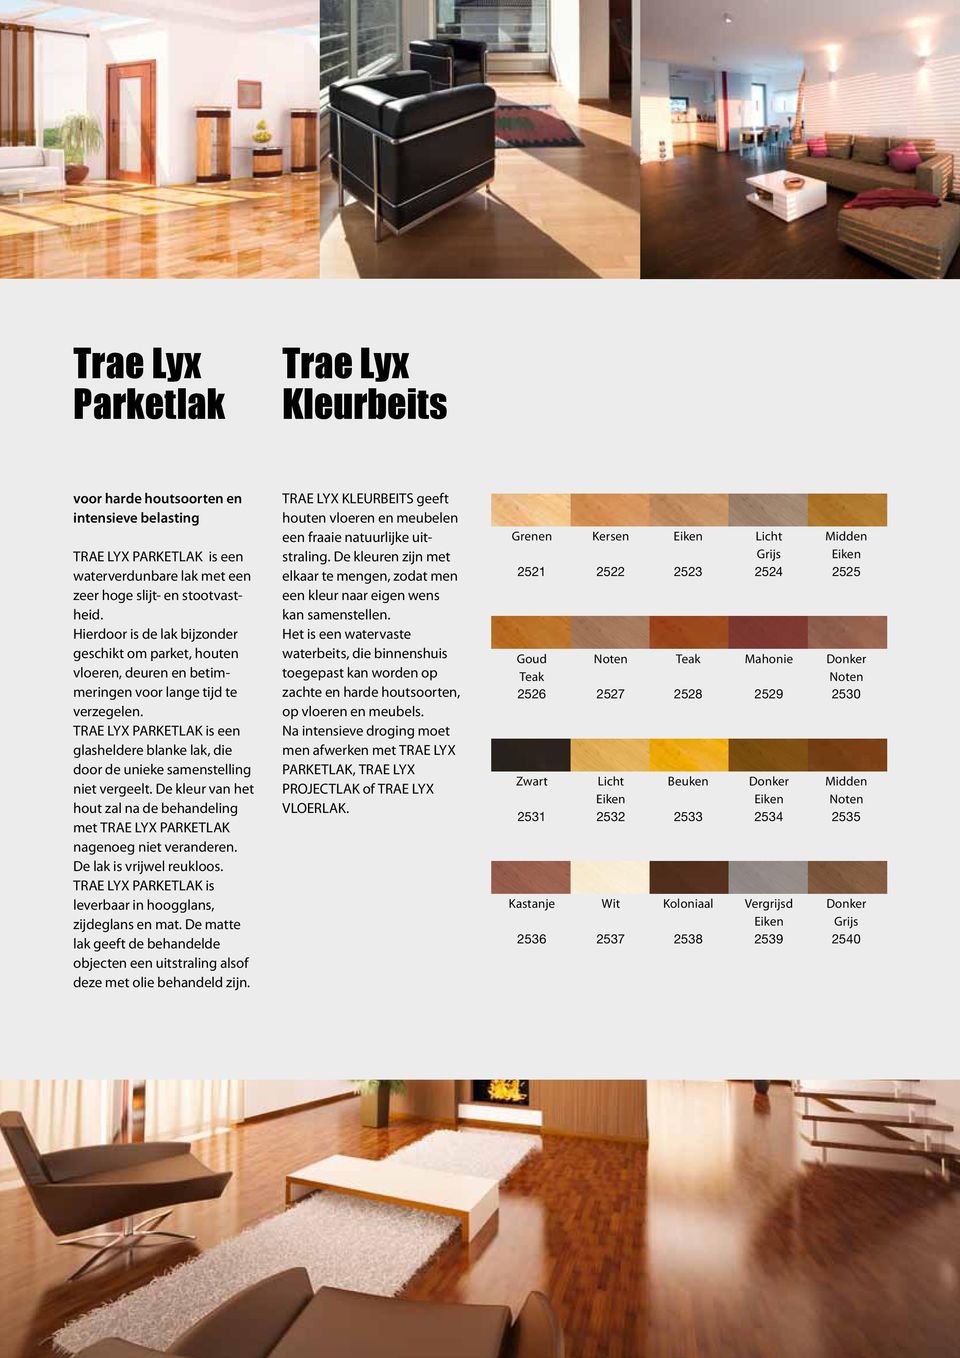 TRAE LYX PARKETLAK is een glasheldere blanke lak, die door de unieke samenstelling niet vergeelt. De kleur van het hout zal na de behandeling met TRAE LYX PARKETLAK nagenoeg niet veranderen.